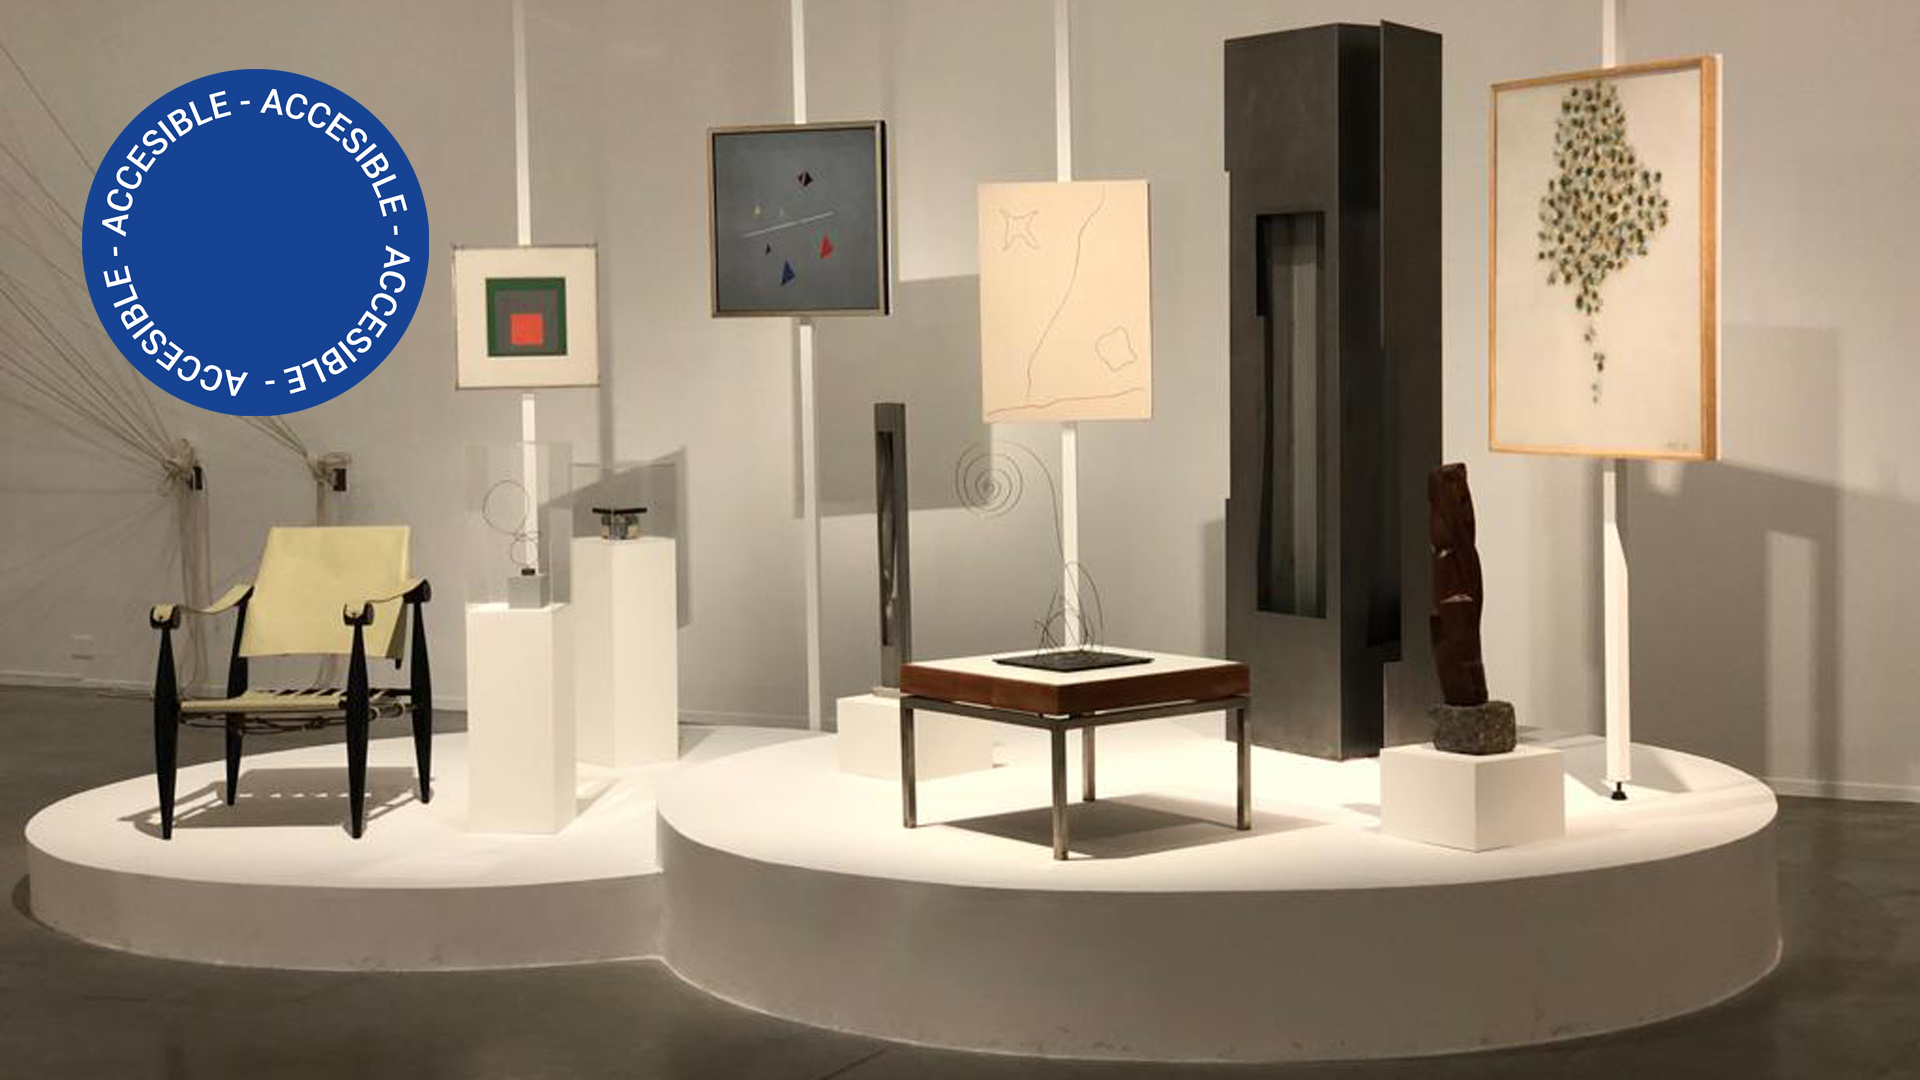 Imagen fotográfica de sala en la exhibición Vida abstracta donde se ven obras de la Colección Pirovano, patrimonio del Museo de Arte Moderno de Buenos Aires.